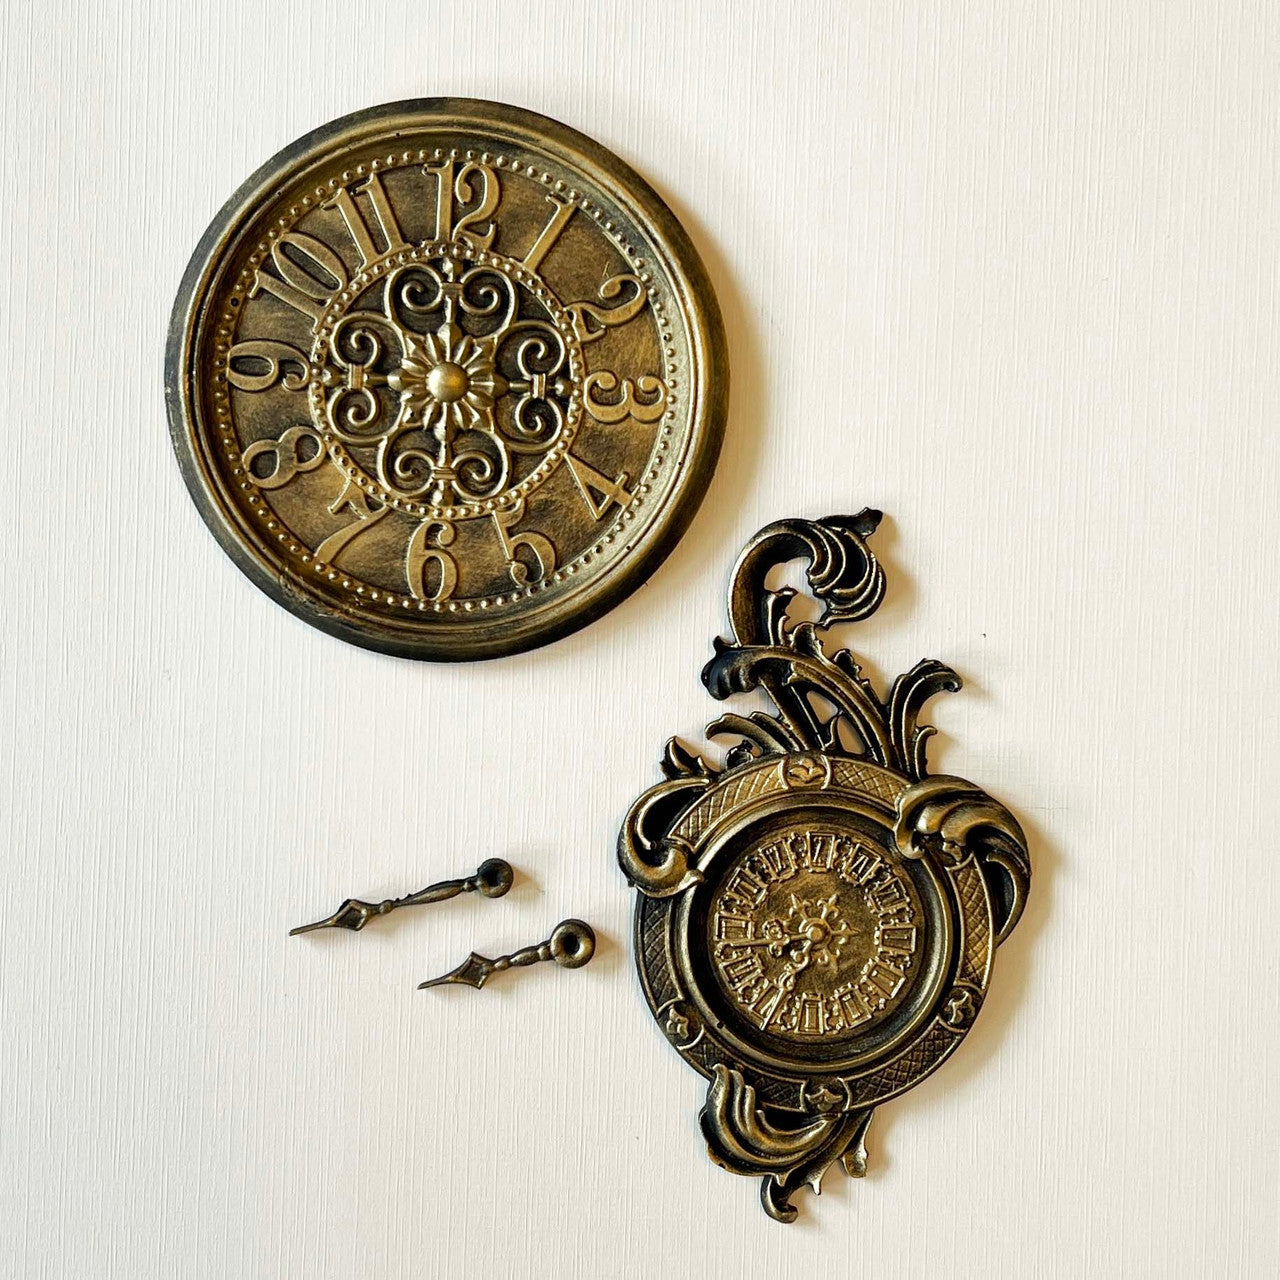 LeBlanche Rococo Clock Silicone Mould - Limited Edition